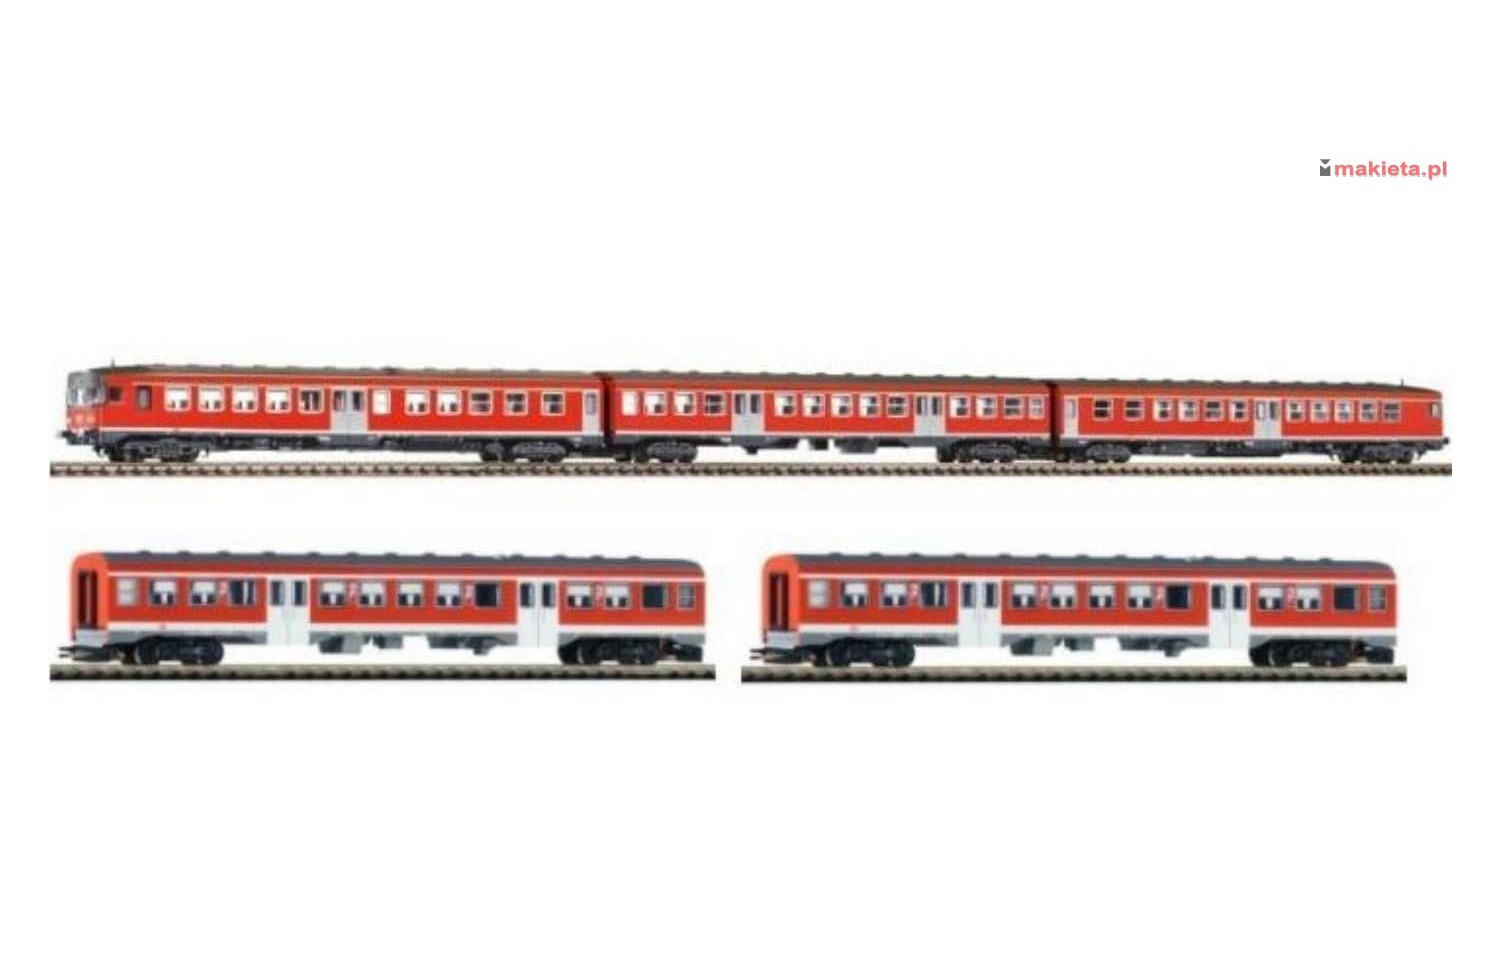 PIKO 40262+2. Spalinowy zespół trakcyjny BR 624 i dwa dodatkowe wagony, DB, ep.V, skala N 1:160